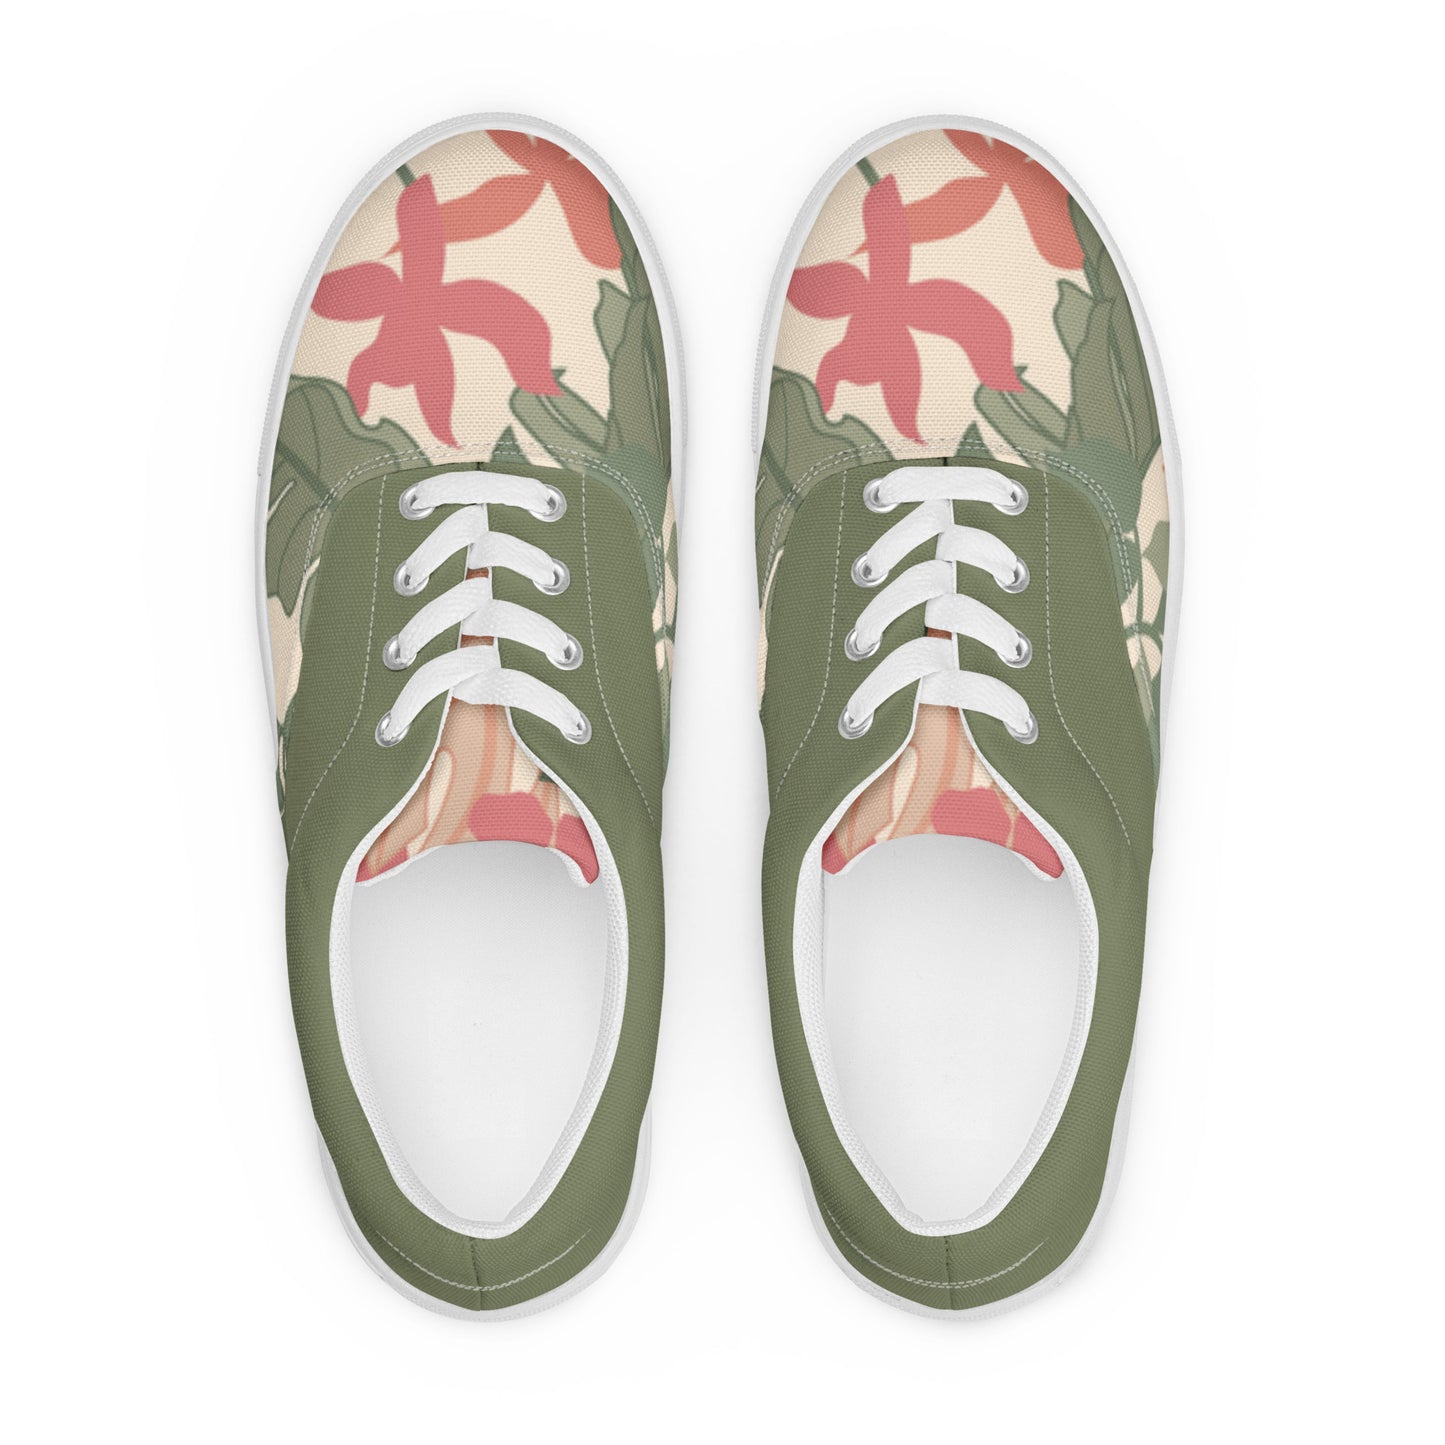 Women’s Floral lace-up canvas shoes